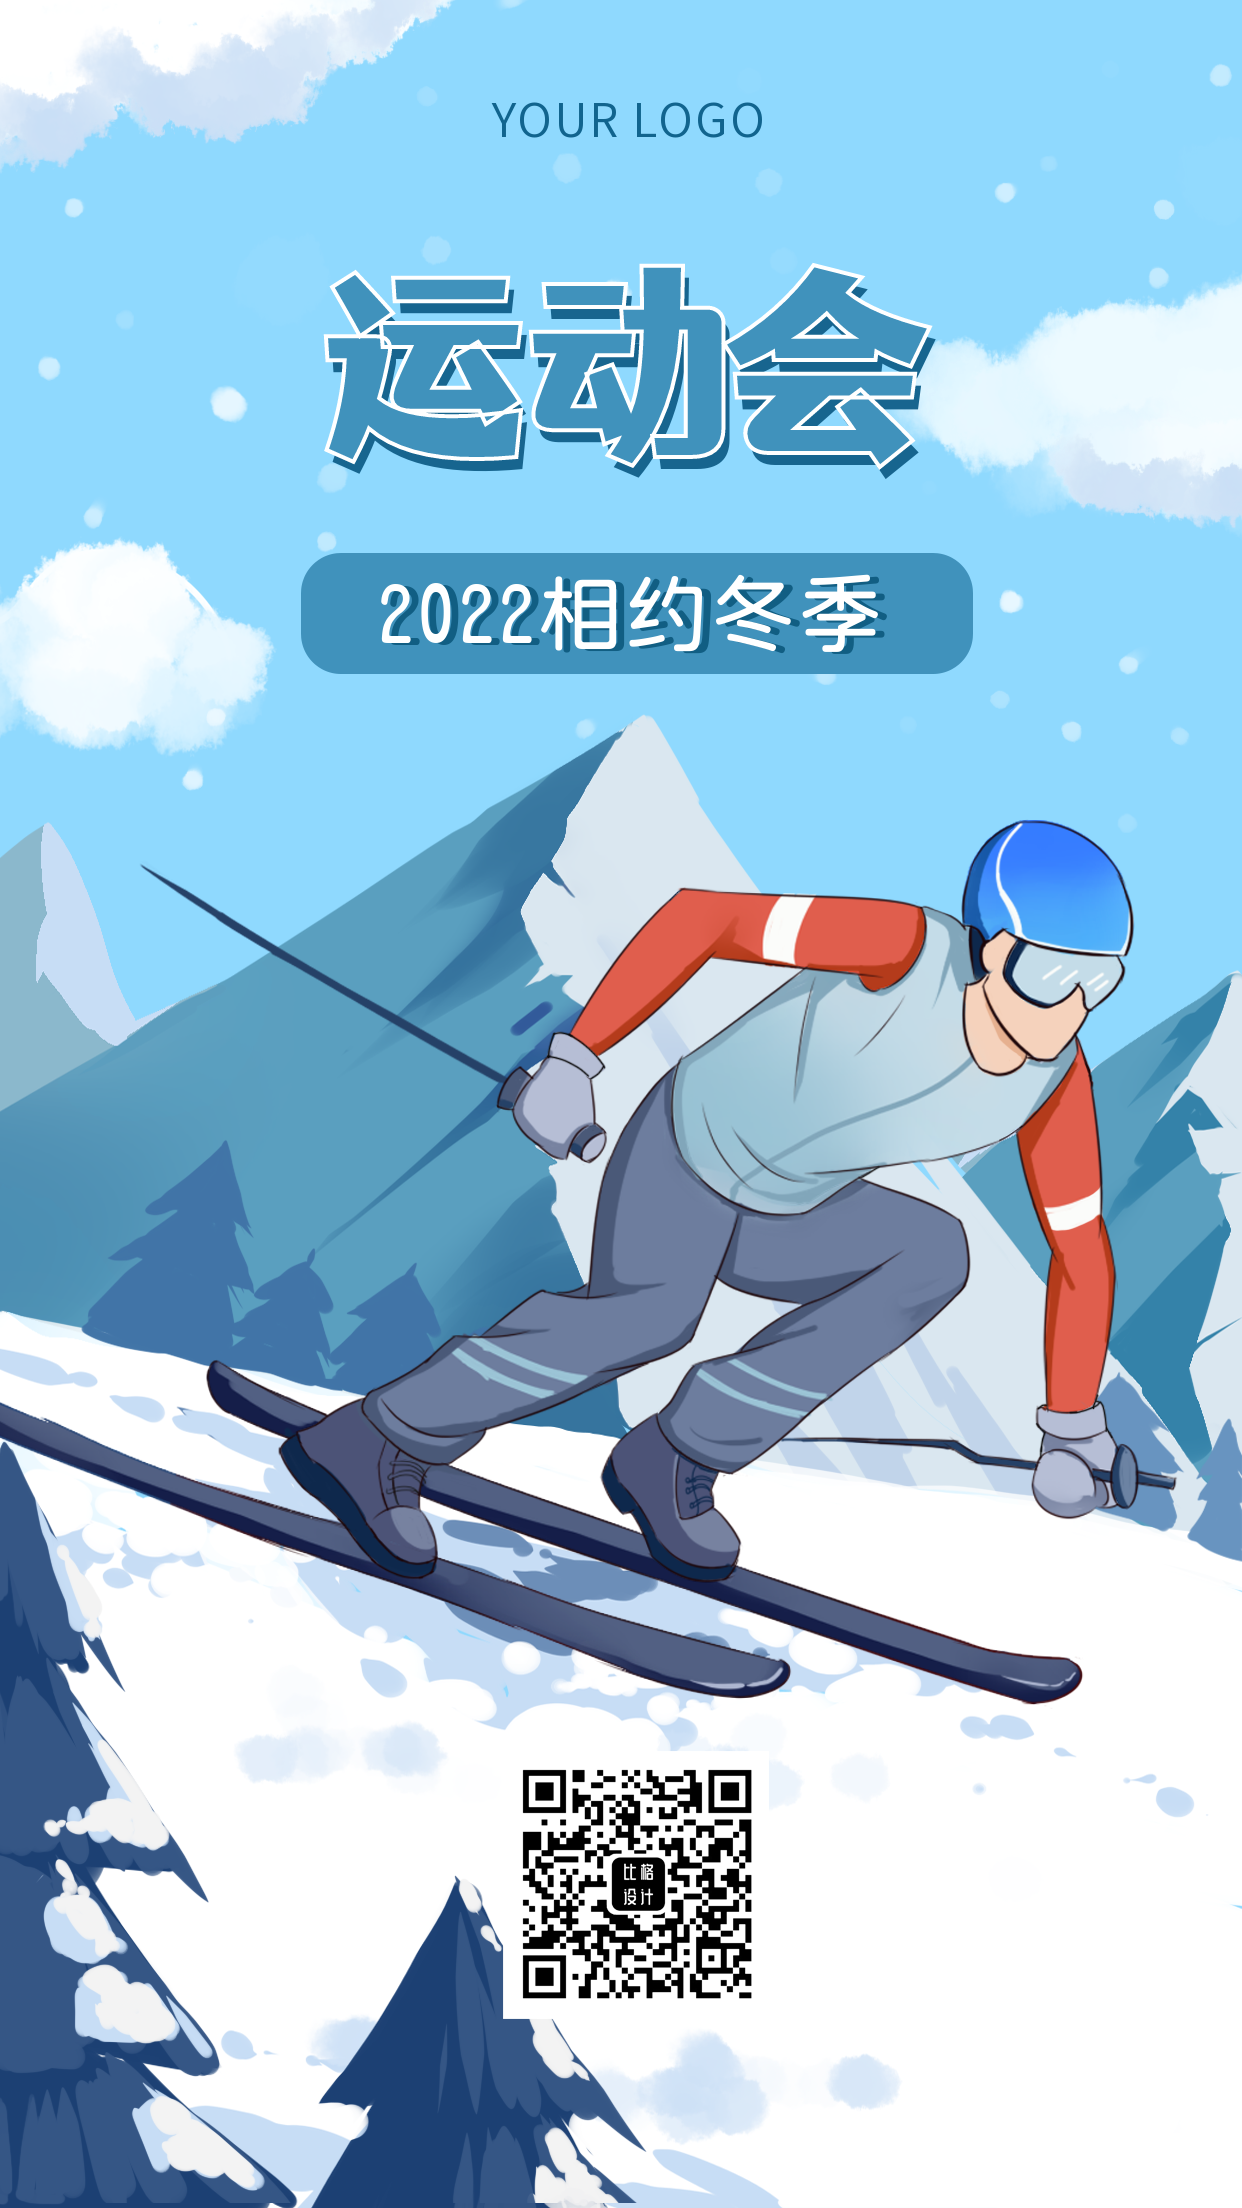 冬季运动会滑雪比赛活动场景手机海报